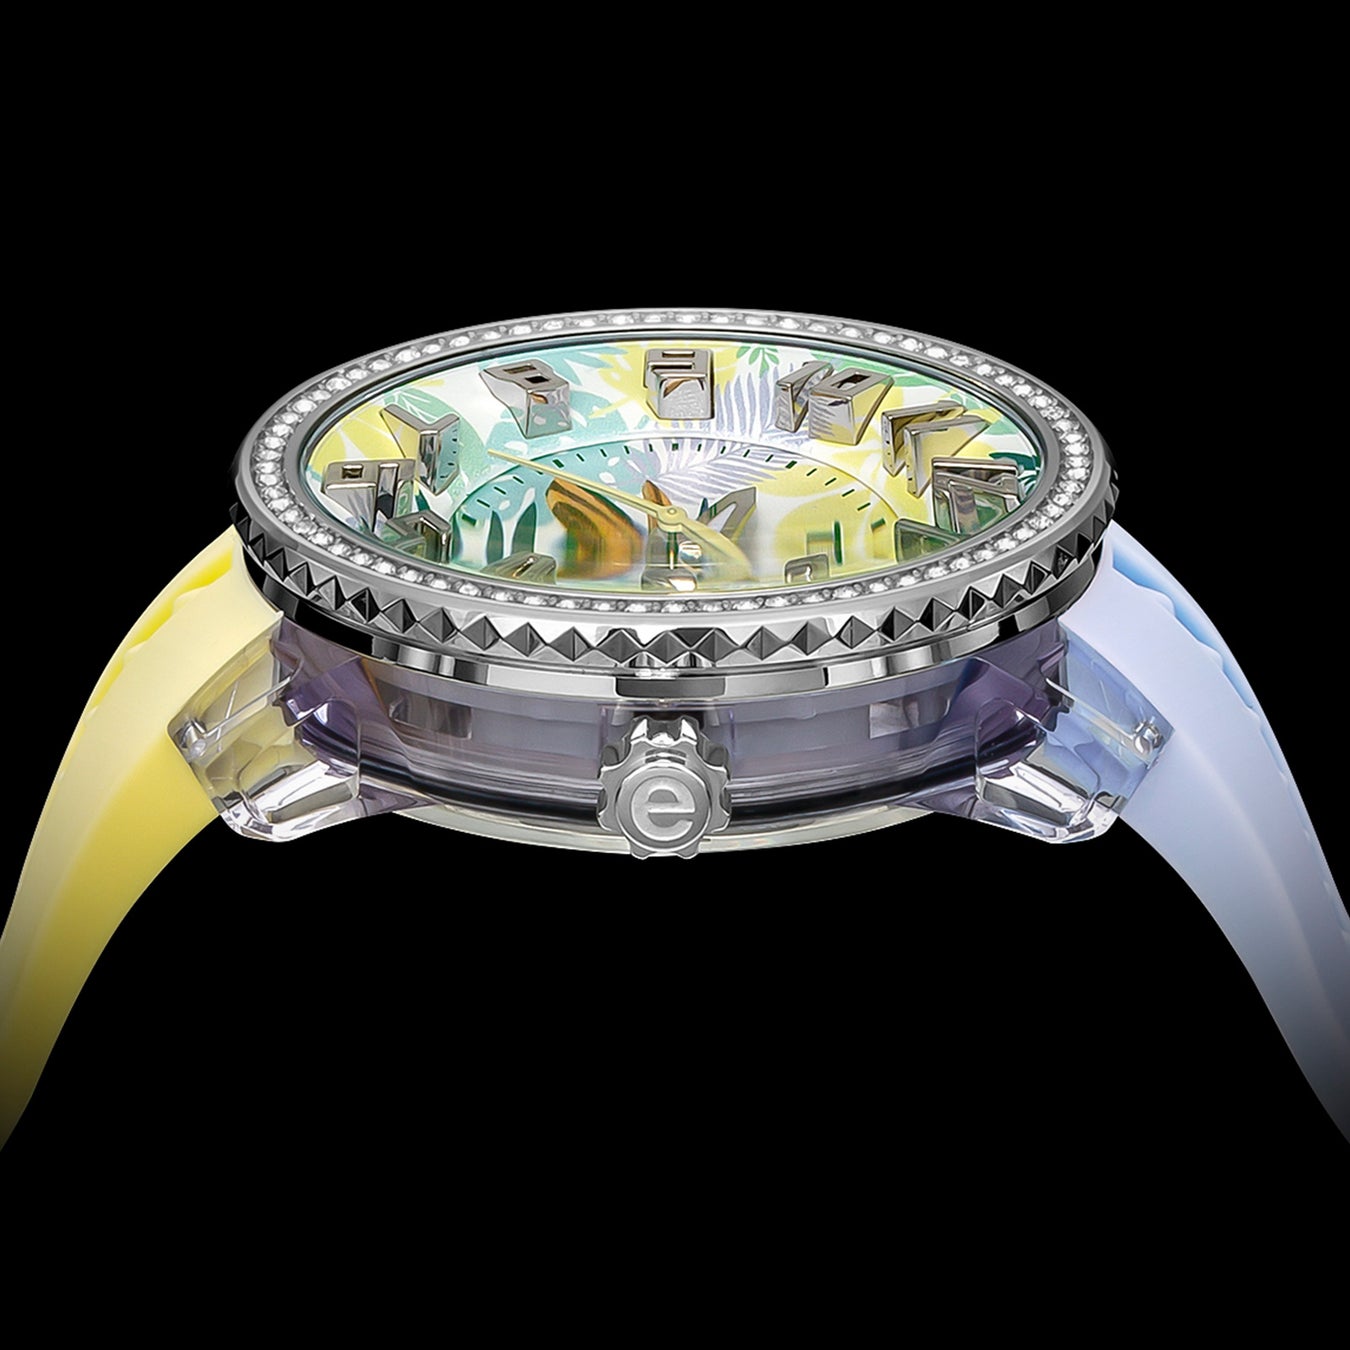 スイス生まれの腕時計ブランド「Tendence（テンデンス）」は自然の美しさや豊かさをパステルカラーで爽やかに...